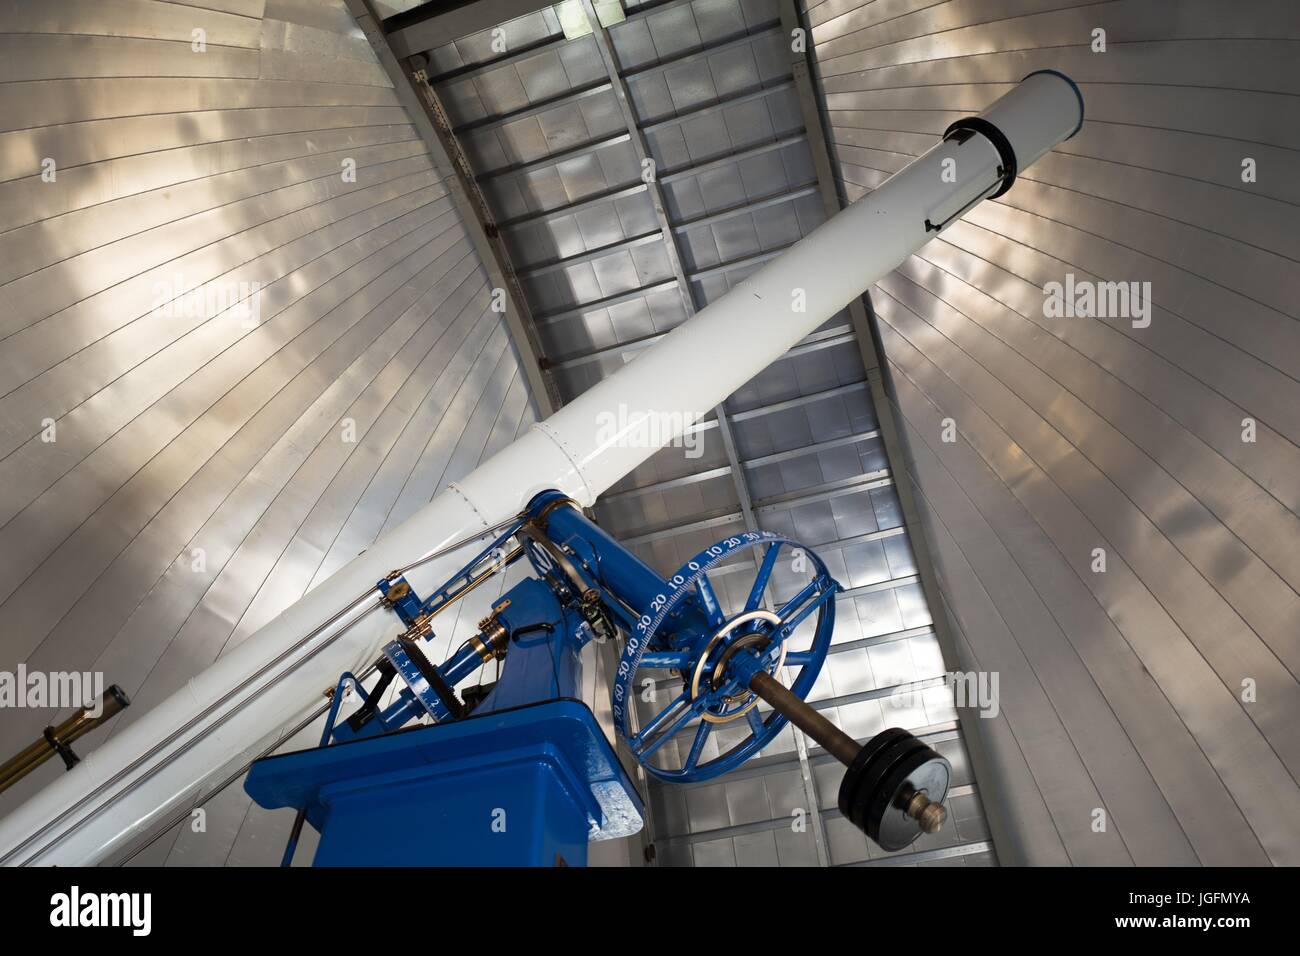 20 pouces de diamètre à partir de la lunette astronomique et Warner Swasey, surnommé Rachel, initialement installé à l'Observatoire de Chabot en 1914 et aujourd'hui utilisé à la Chabot Space and Science Center, un musée des sciences et à l'observatoire à Oakland, Californie, le 15 juin 2017. Banque D'Images